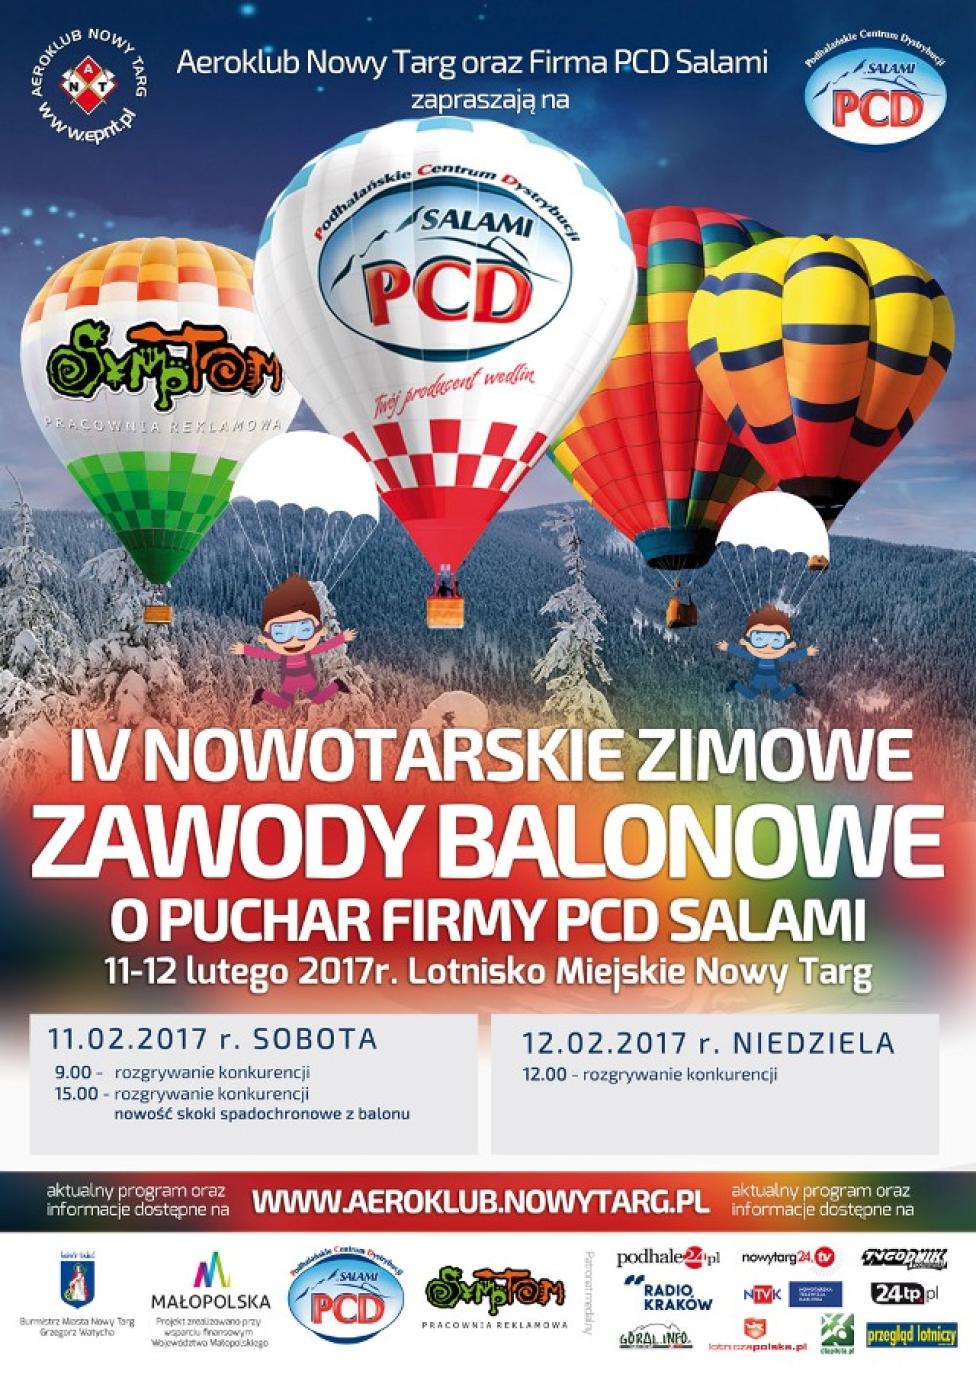 IV Nowotarskie Zimowe Zawody Balonowe o Puchar Firmy PCD SALAMI